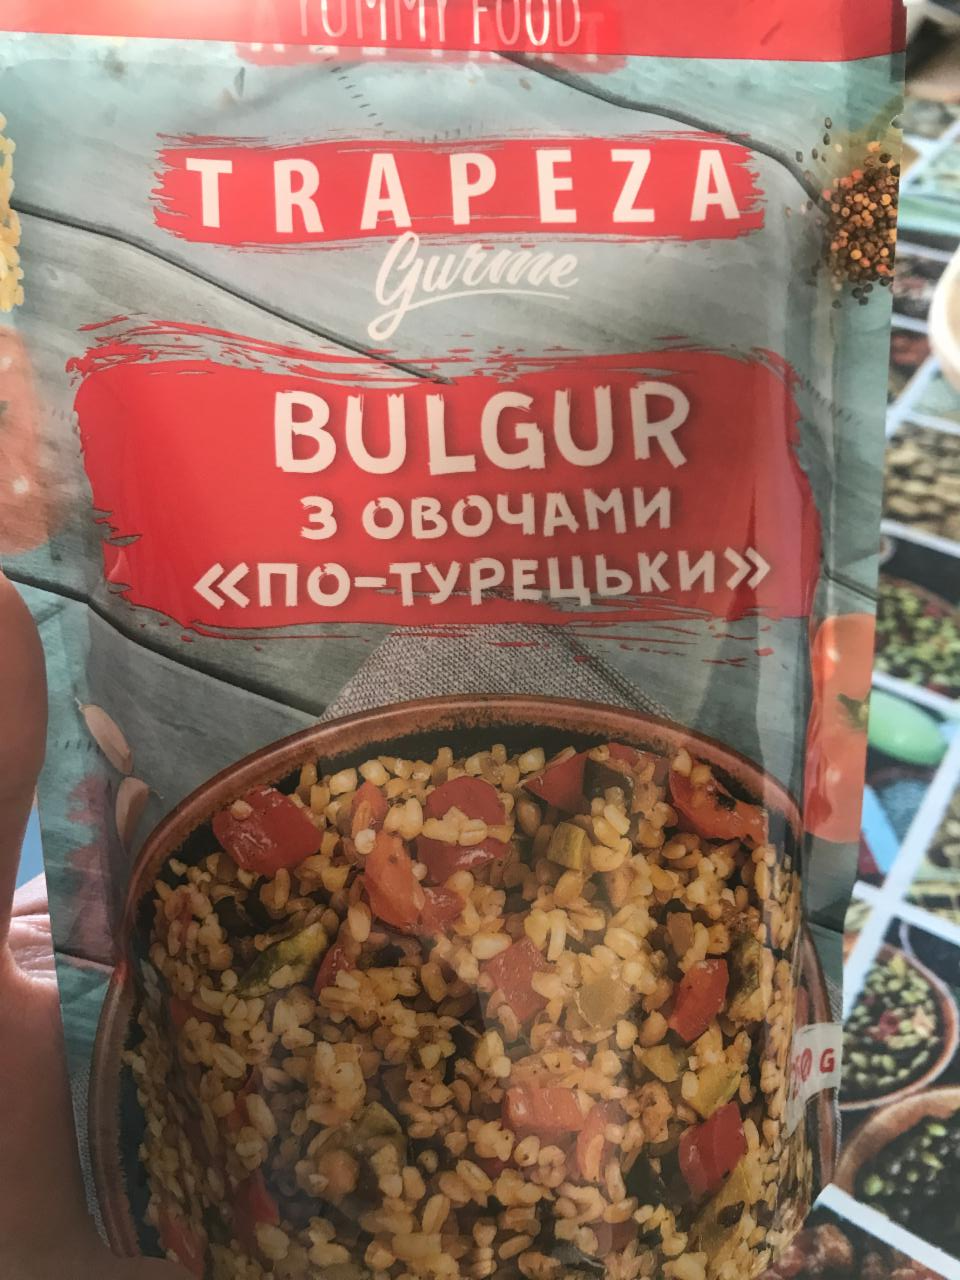 Фото - Булгур з овочами по-турецькі Trapeza